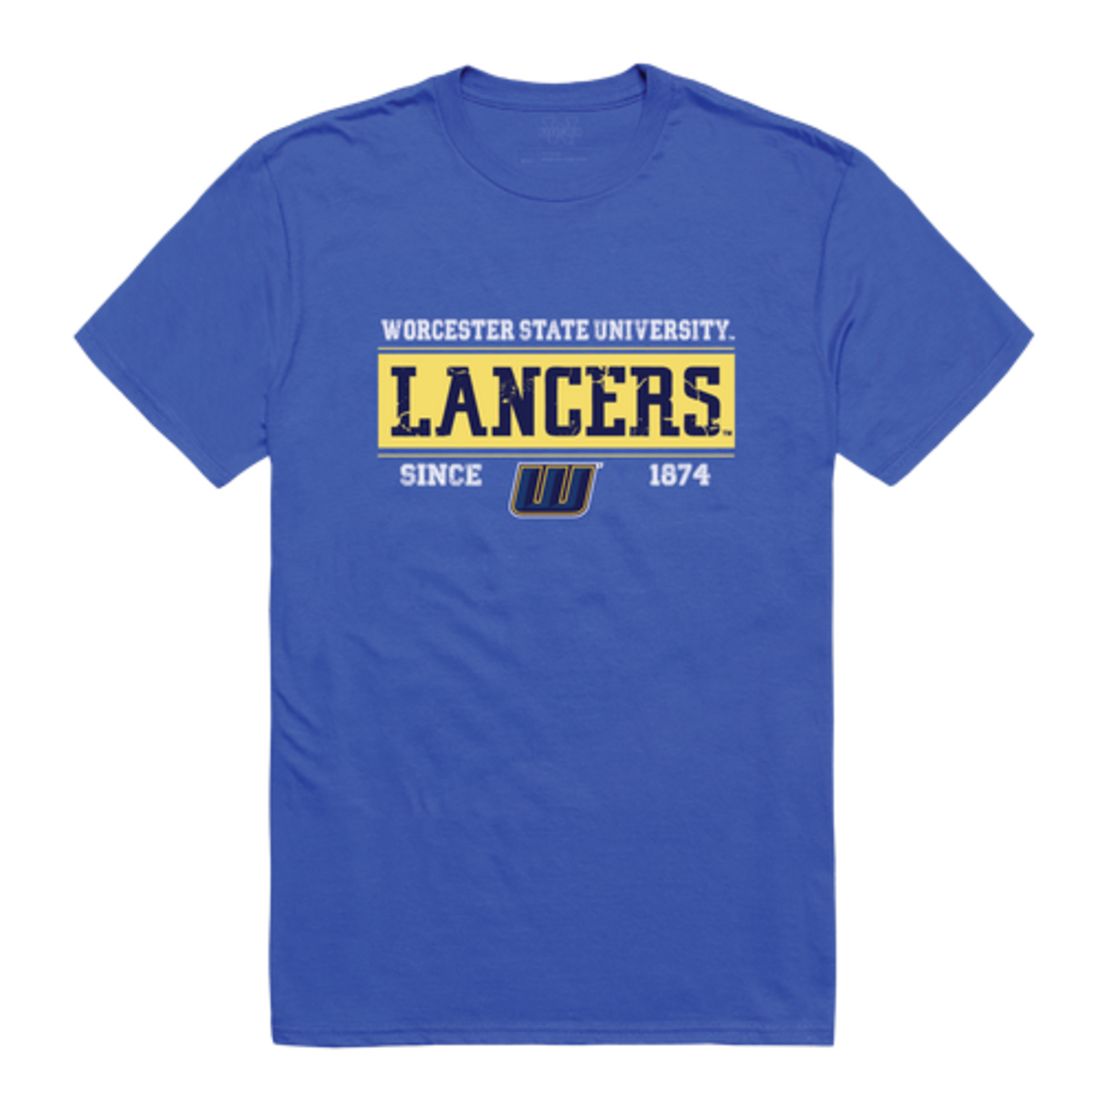 Worcester State University Lancers Established T-Shirt Tee